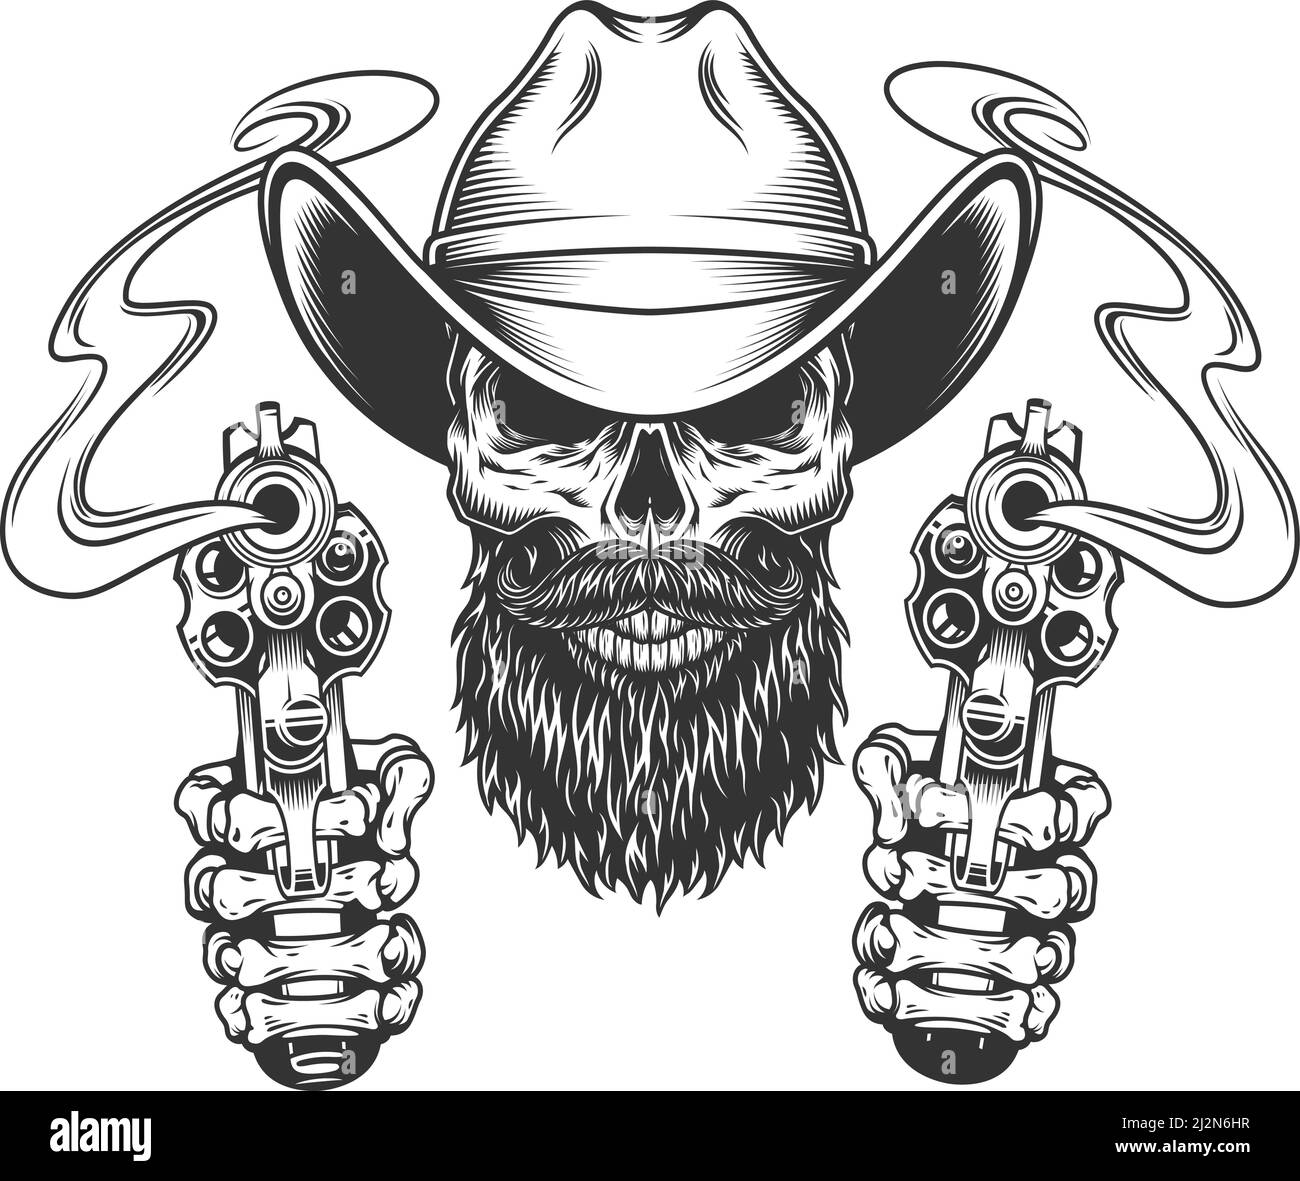 Crâne de cow-boy vintage barbu et moustaché avec mains de squelette tenant illustration vectorielle isolée par pistolets Illustration de Vecteur